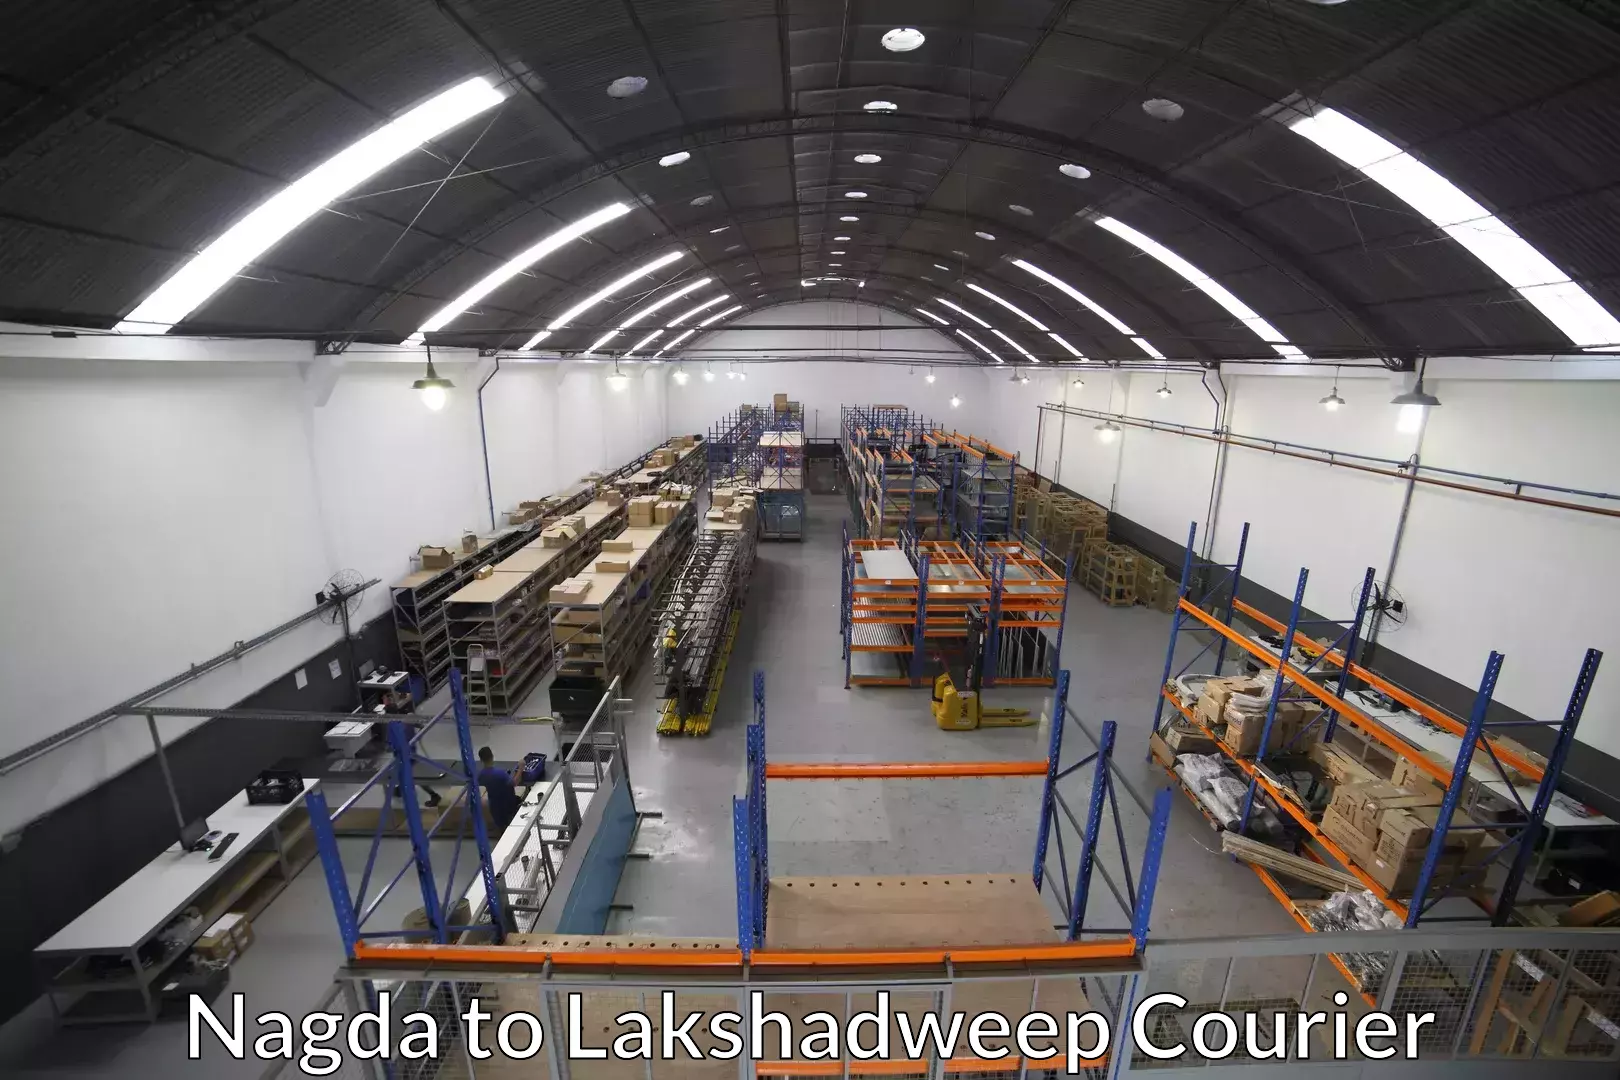 Efficient moving company Nagda to Lakshadweep